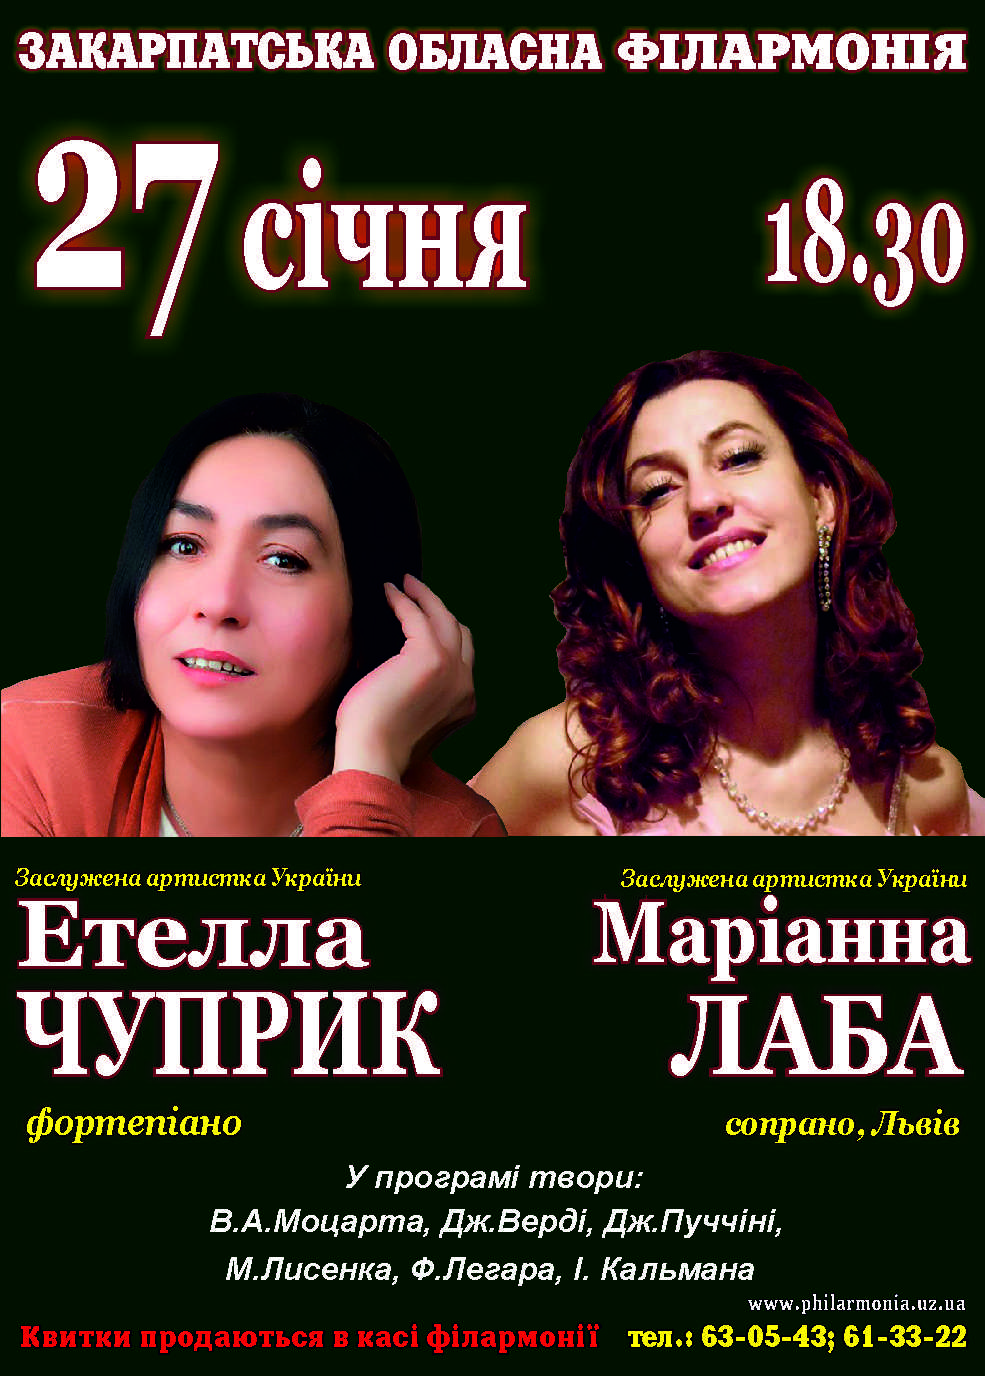 27 января в 18.30 в Закарпатской областной филармонии на одной сцене выступят две яркие исполнительницы, наши землячки, заслуженные артистки Украины Этелла Чуприк (фортепиано) и Марианна Лаба (сопрано).